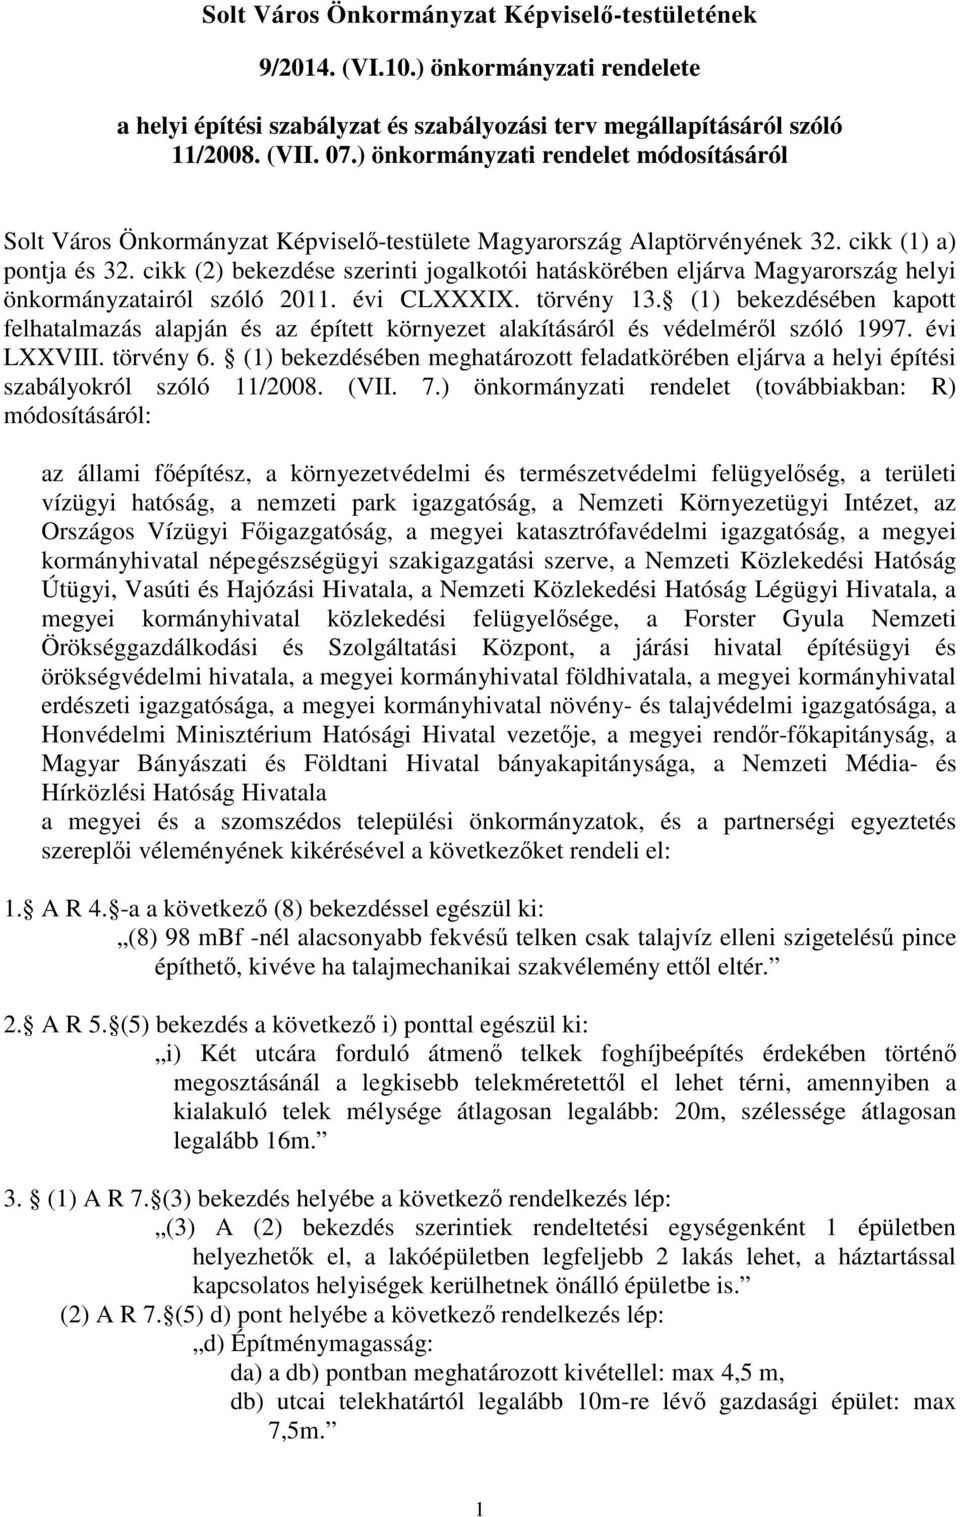 cikk (2) bekezdése szerinti jogalkotói hatáskörében eljárva Magyarország helyi önkormányzatairól szóló 2011. évi CLXXXIX. törvény 13.